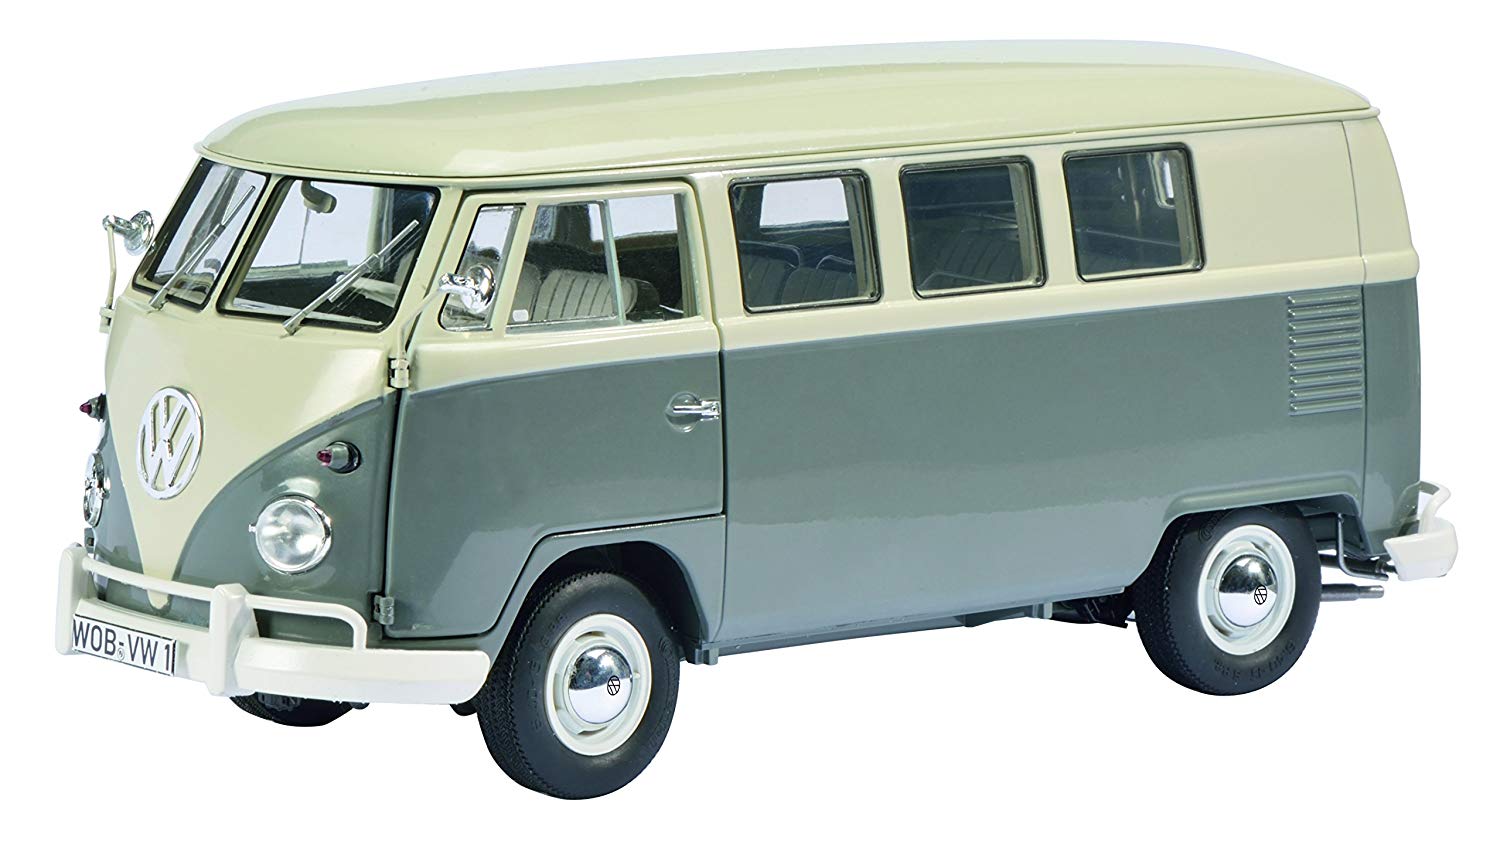 Volkswagen T1 Bus 1:64 Schuco Dickie 452010500